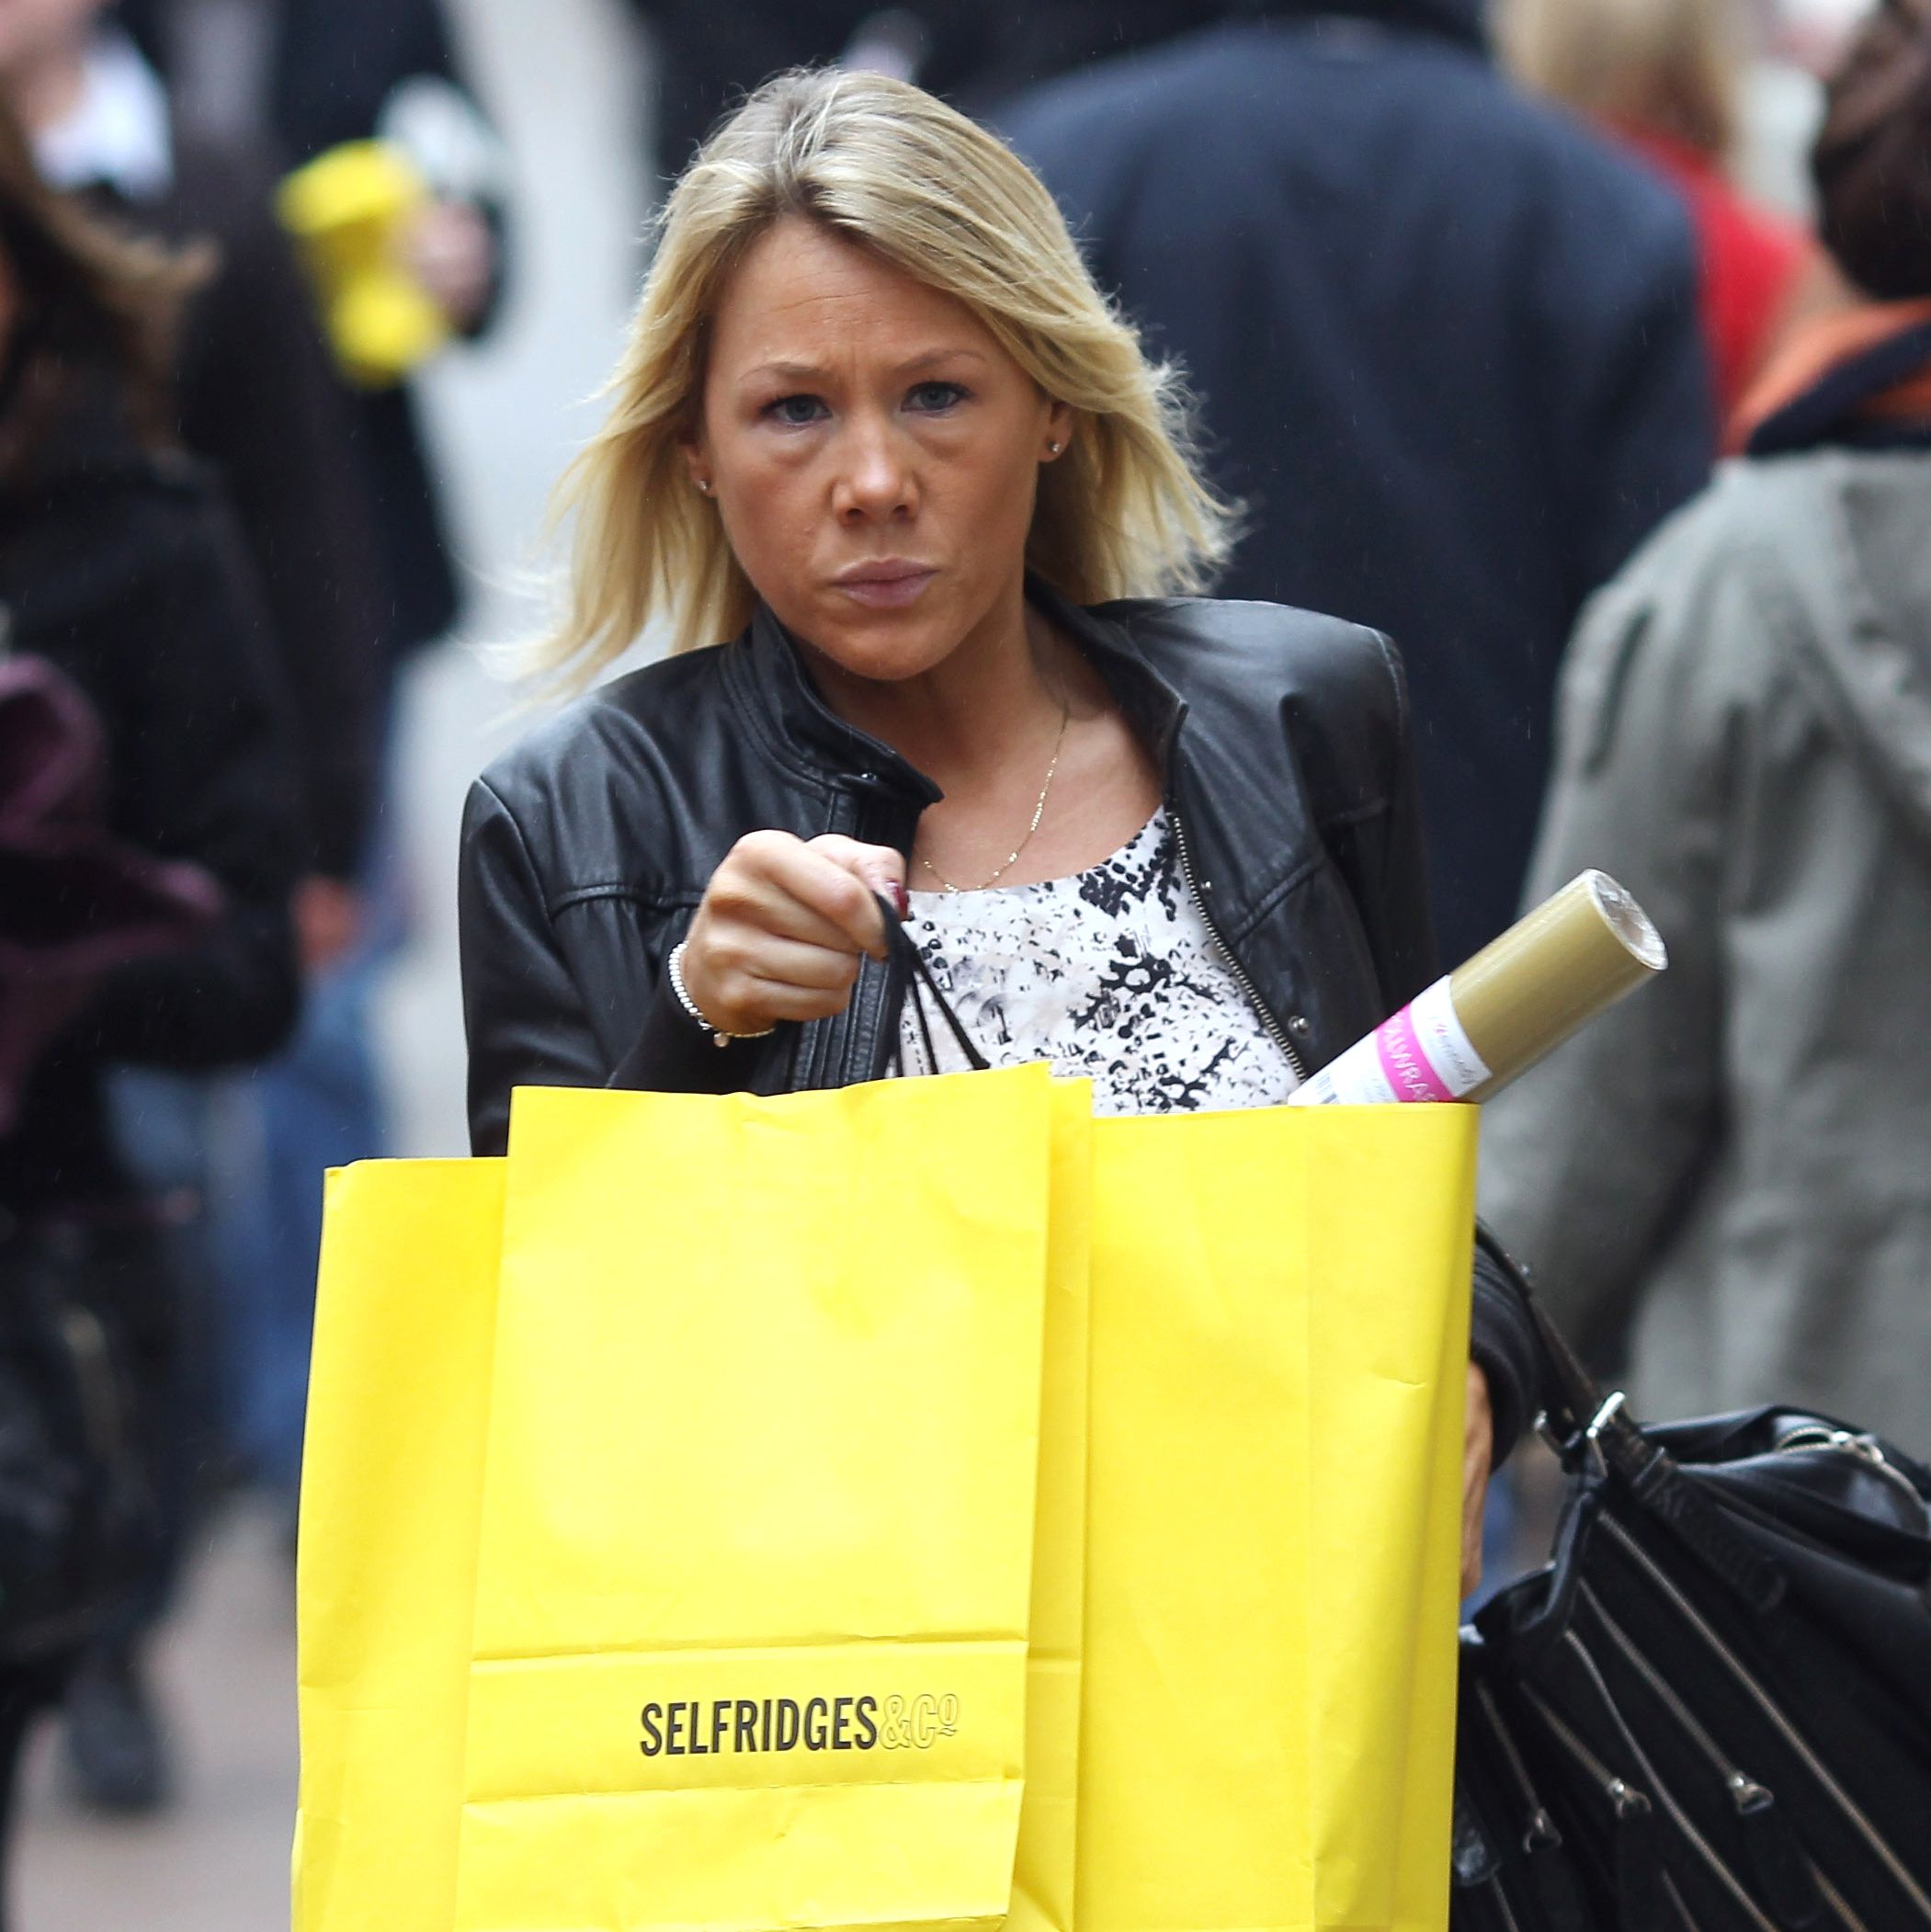 Синдромът на безразборното пазаруване най-често засяга жените